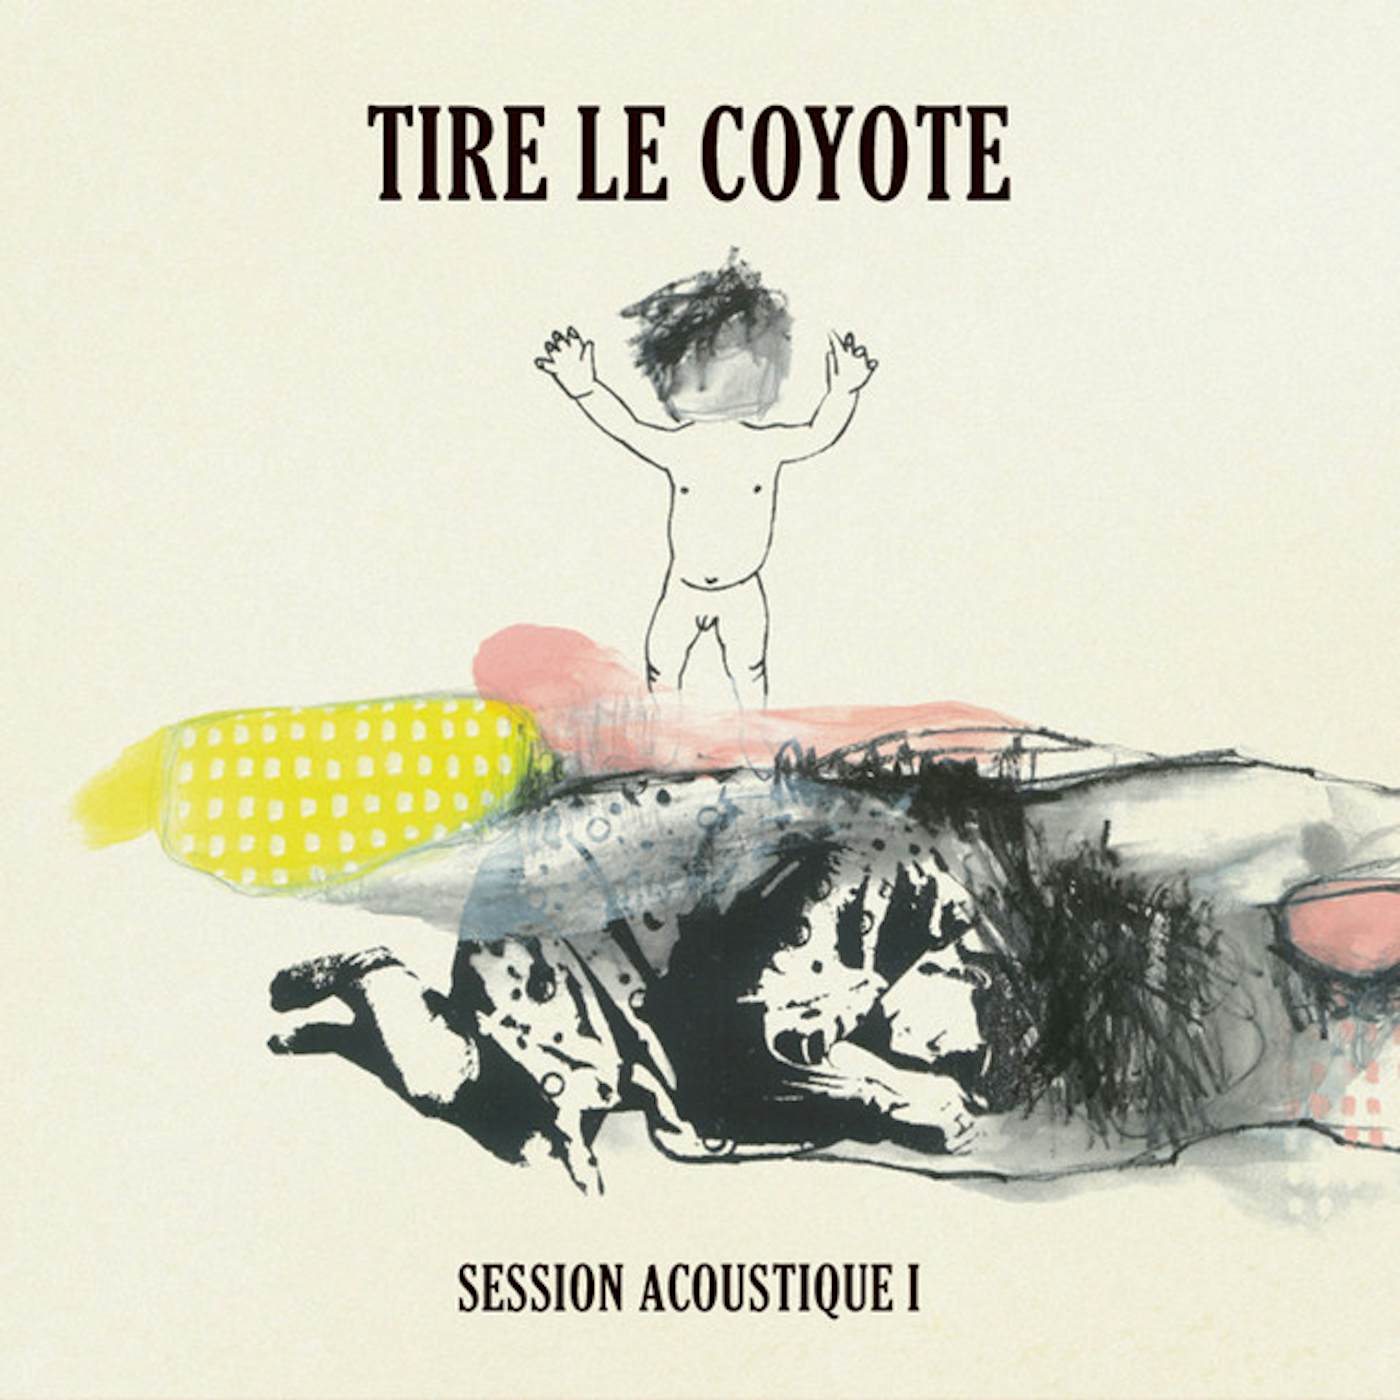 Tire Le Coyote SESSION ACOUSTIQUE 1 CD